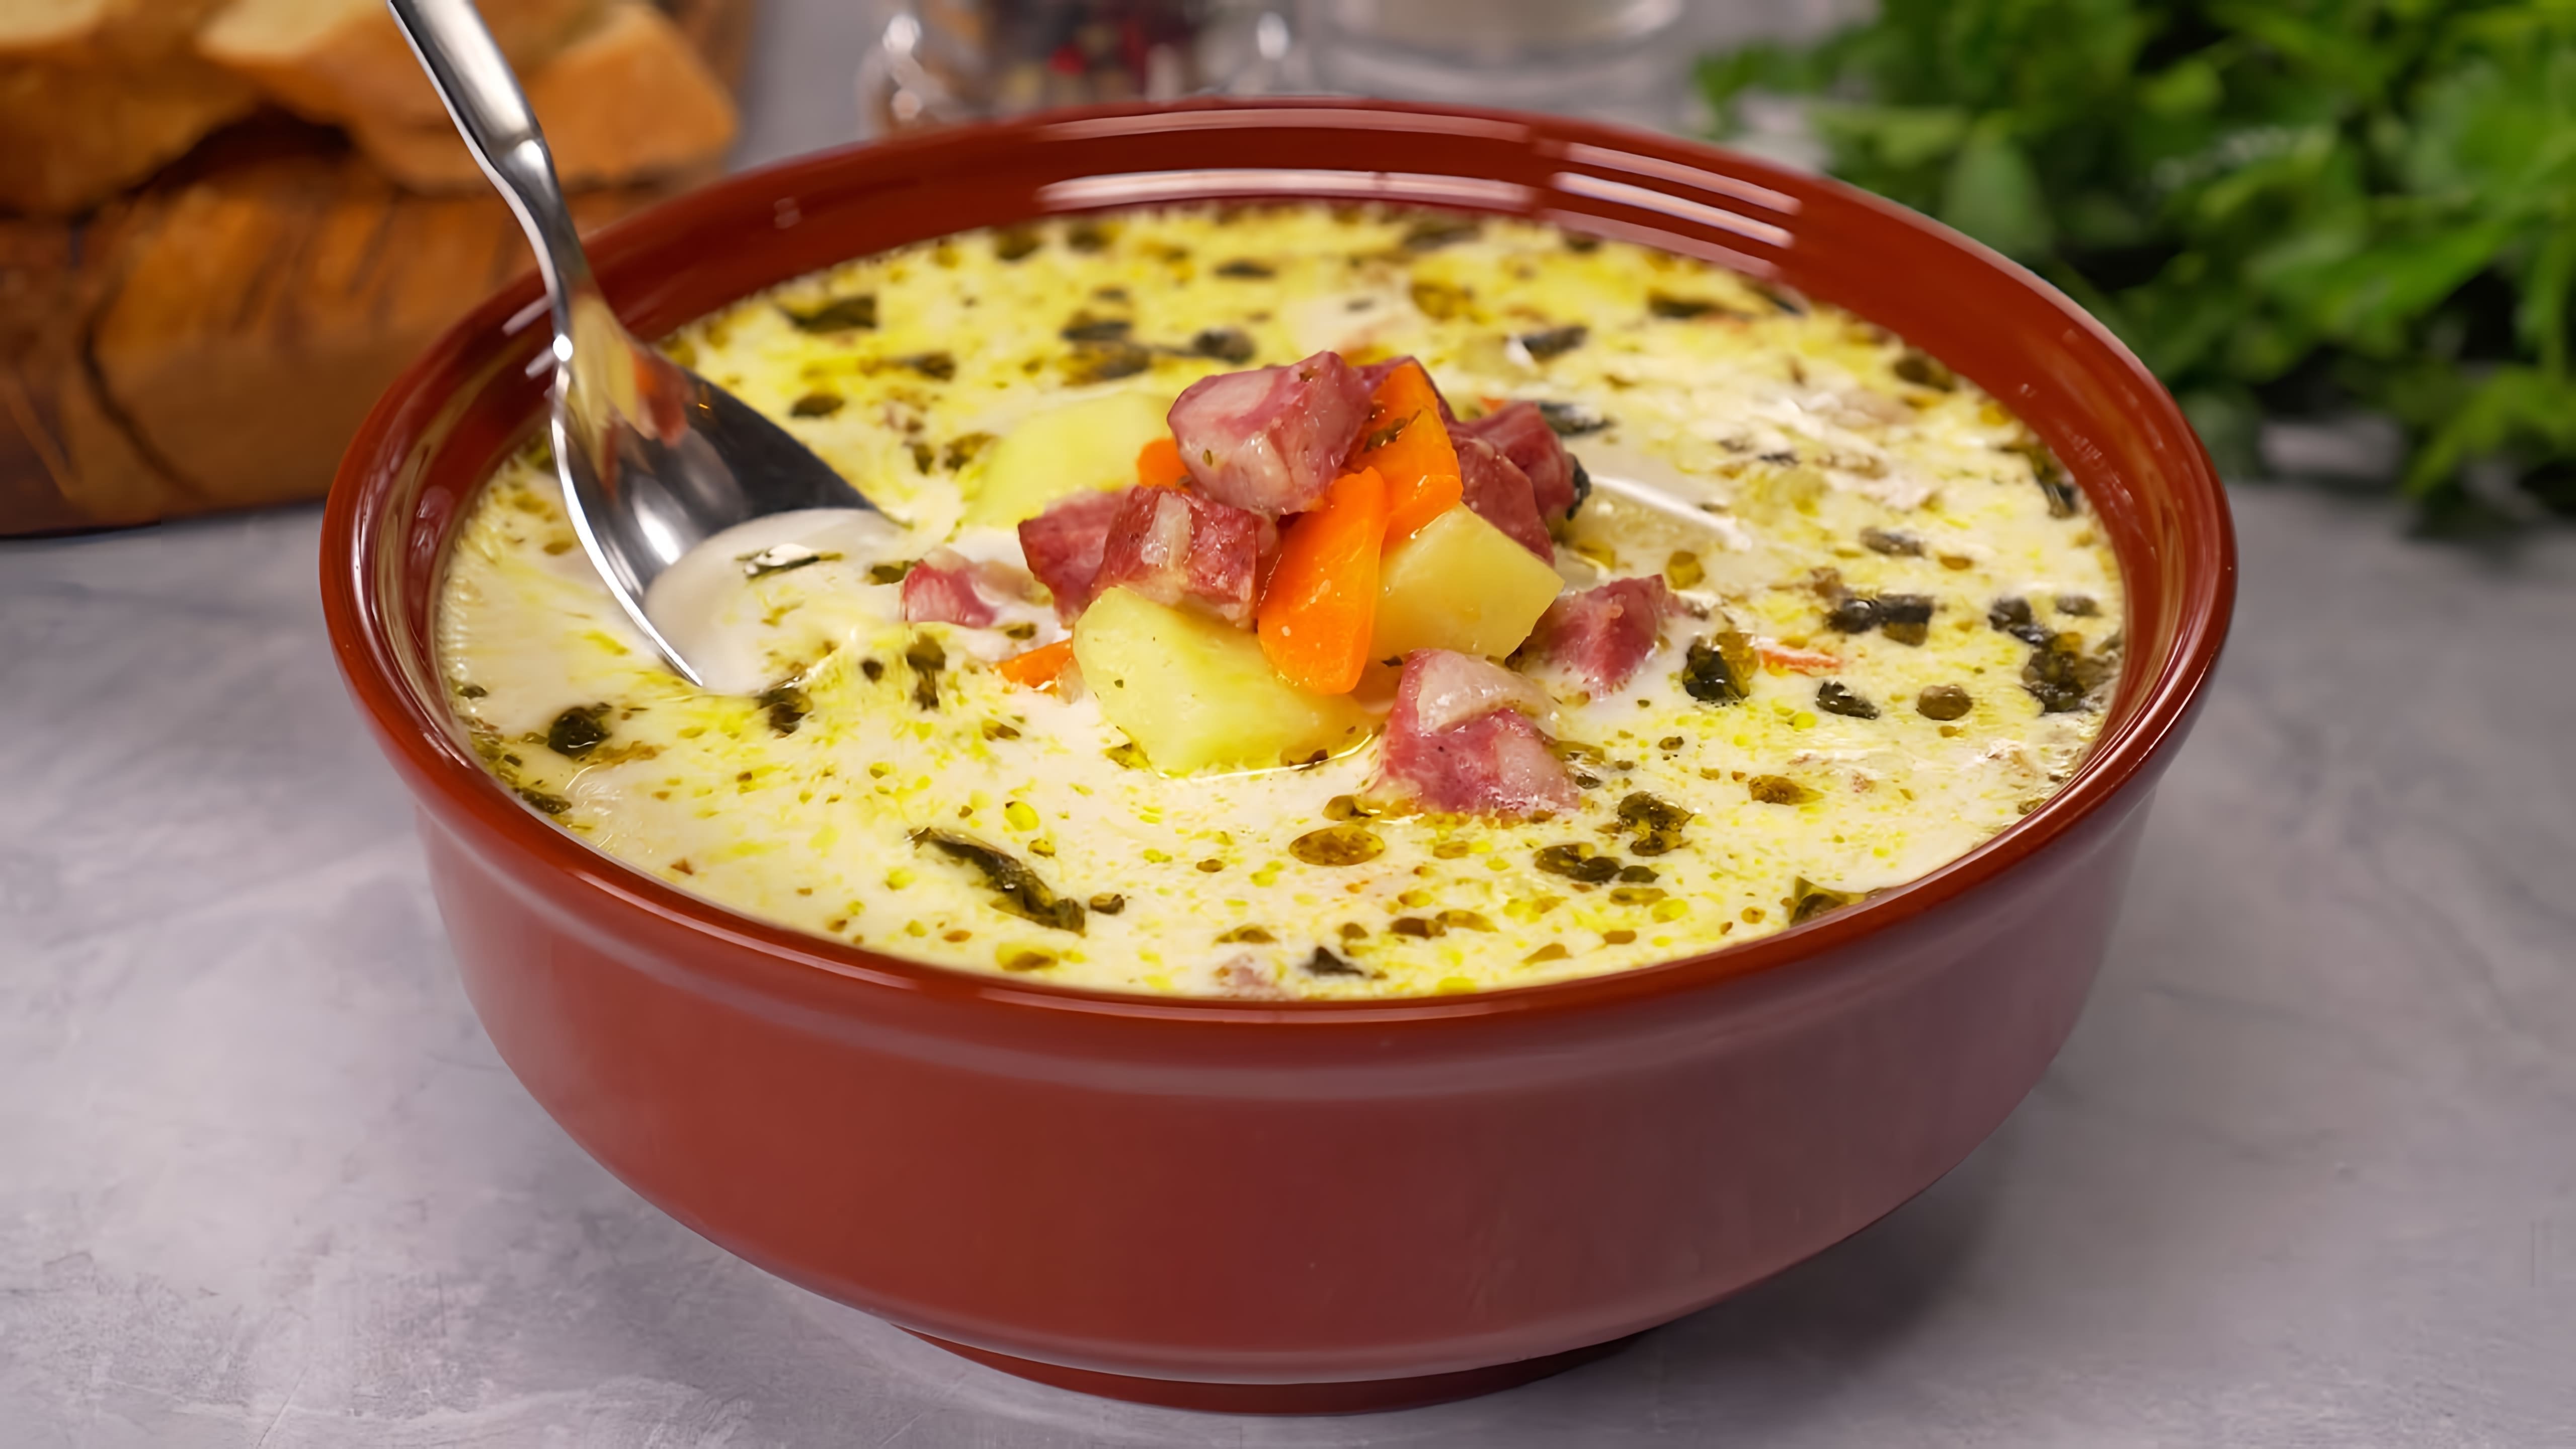 В этом видео демонстрируется рецепт быстрого и вкусного картофельного супа по-польски